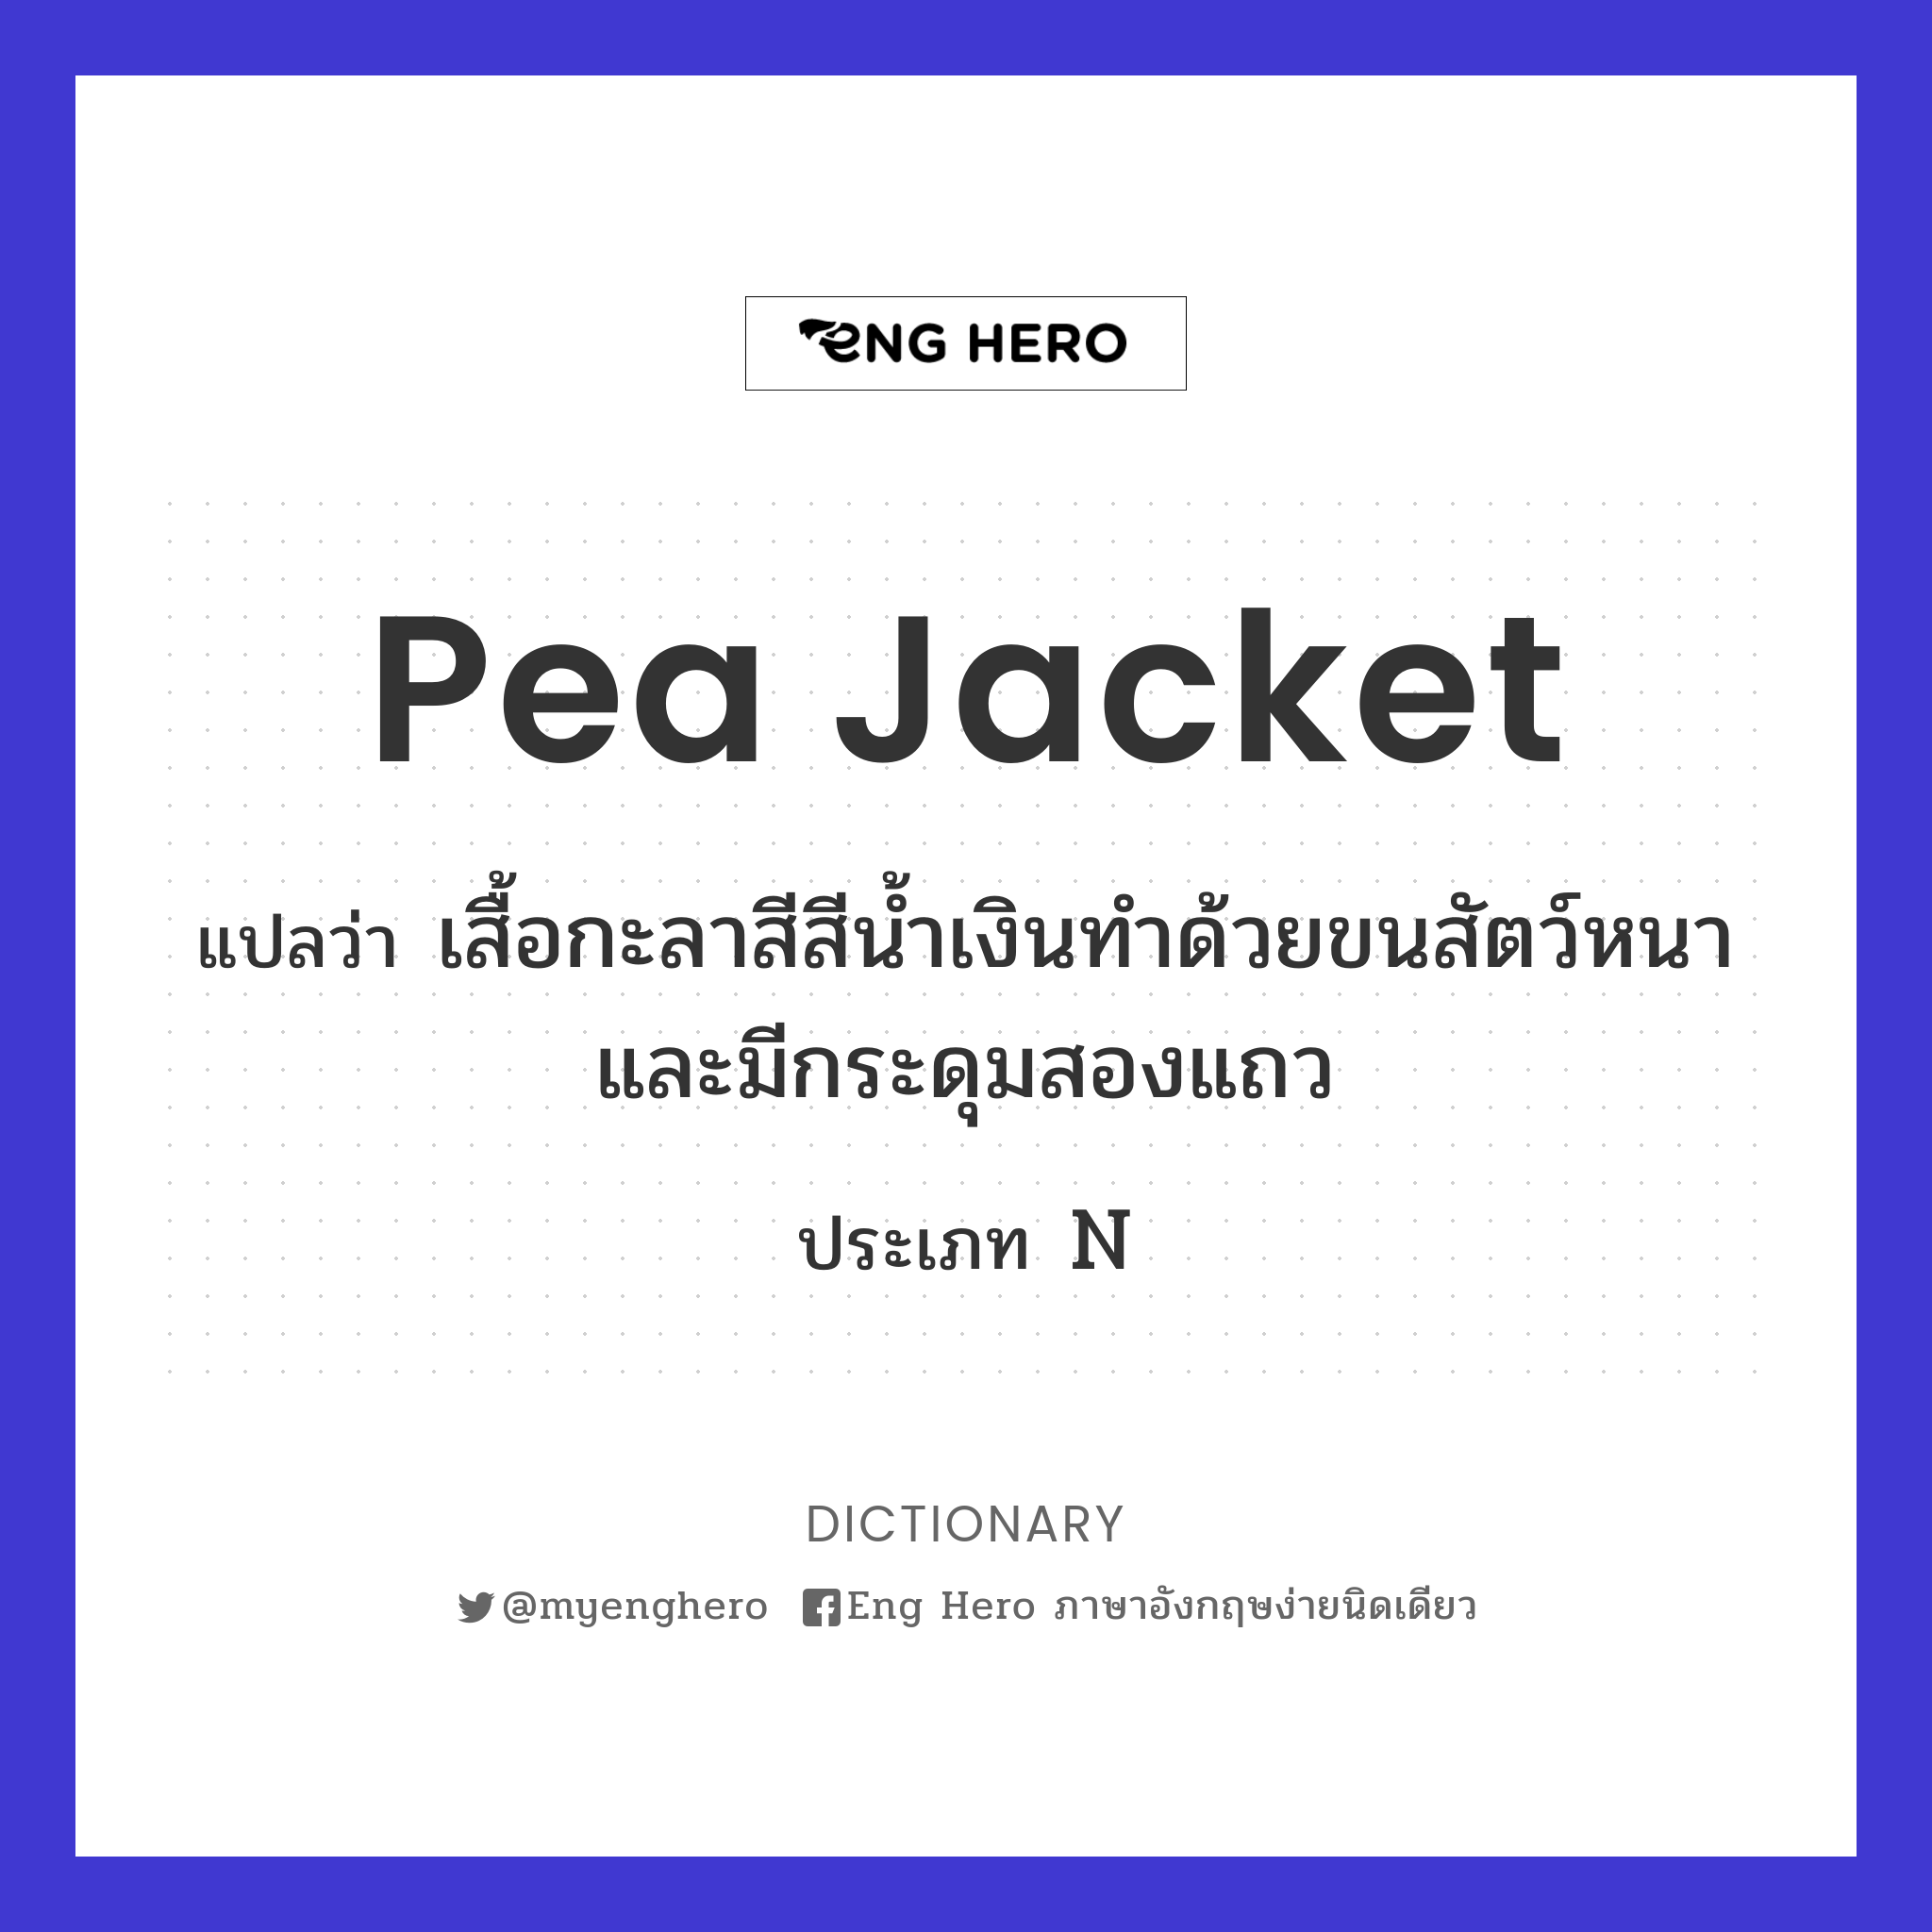 pea jacket